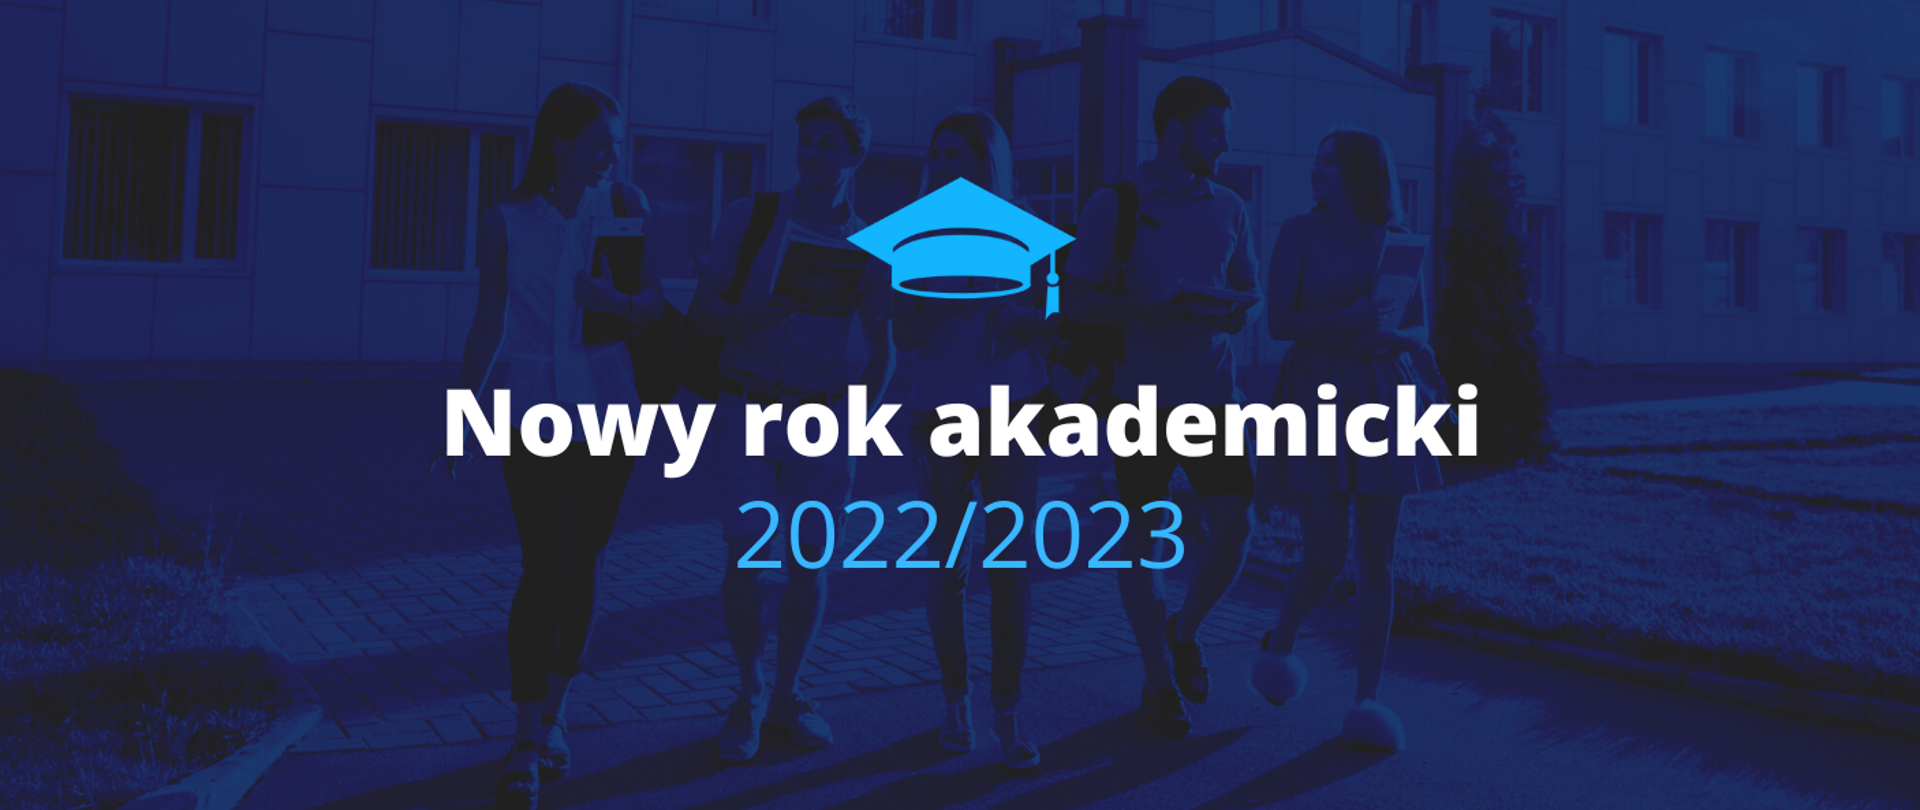 Grafika - na niebieskim tle czapka studencka i napis Nowy rok akademicki 2022/2023.